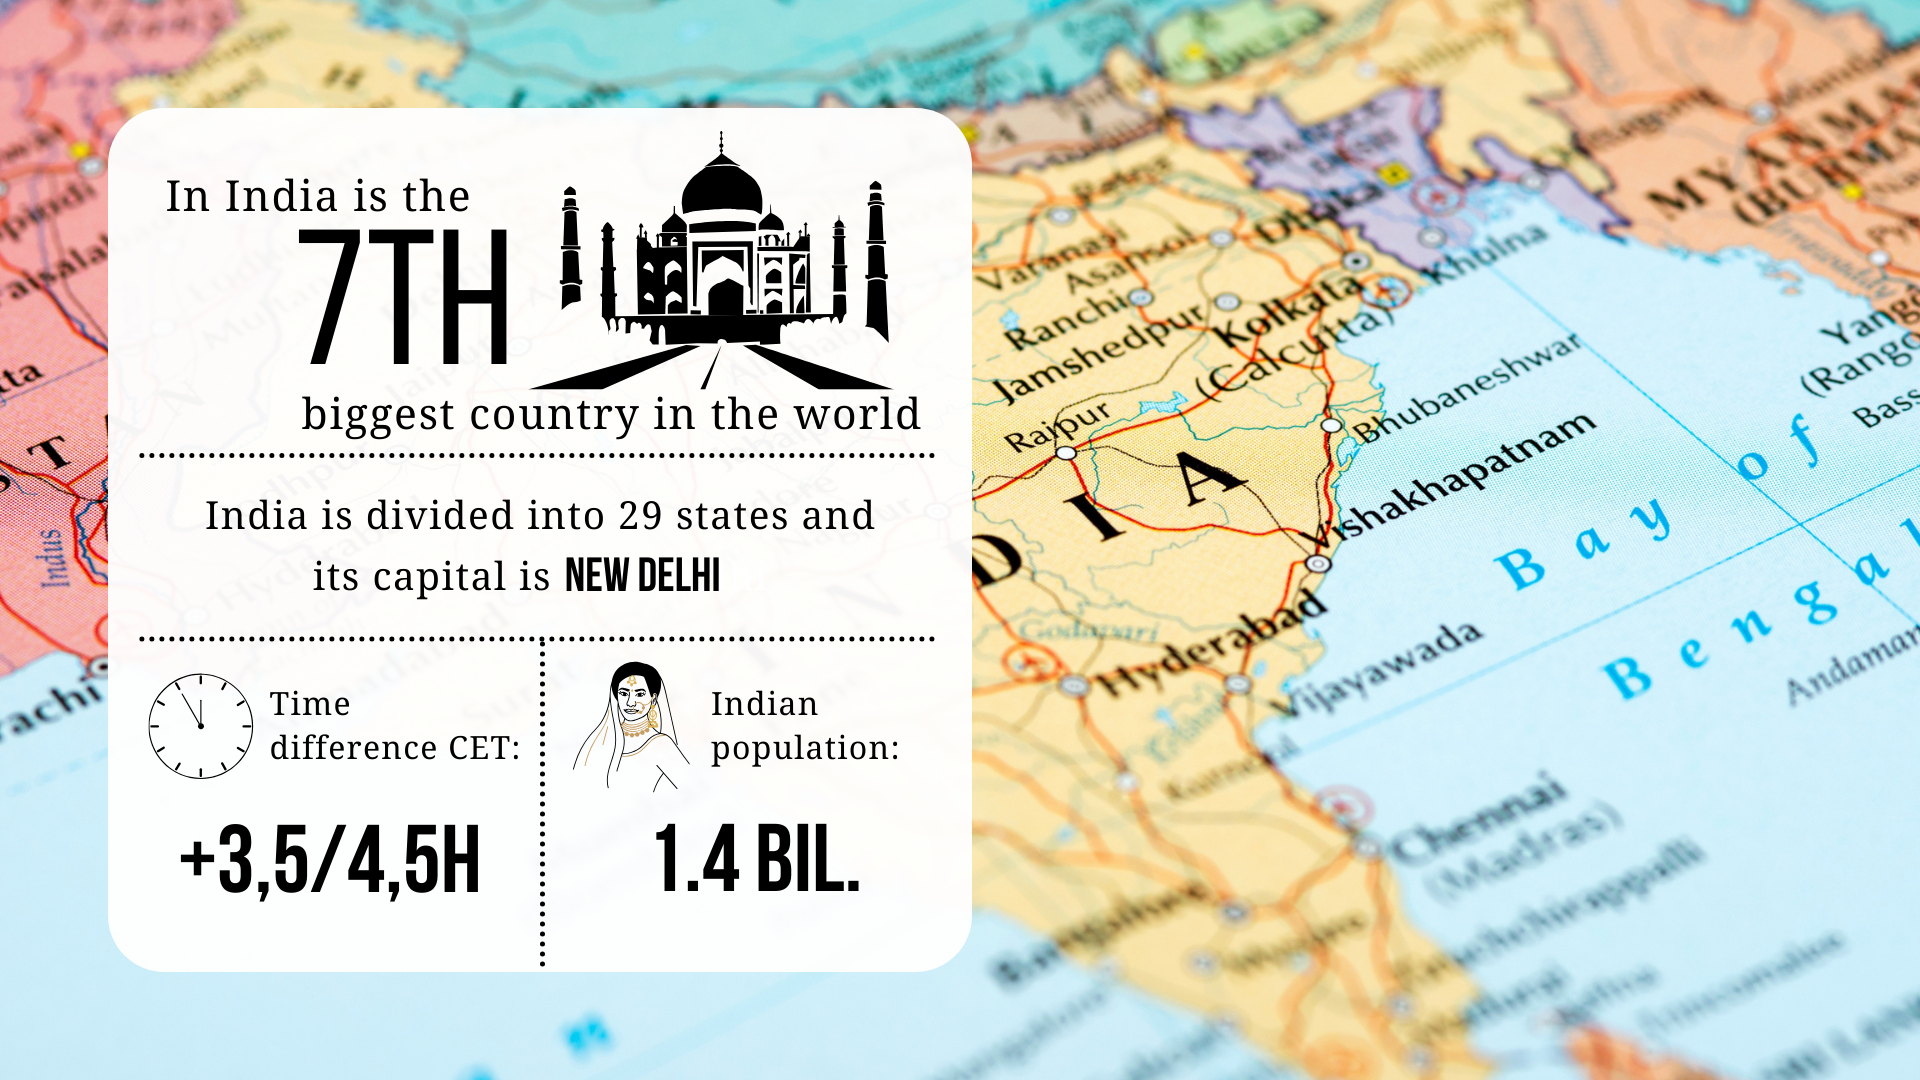 L'India è il 7° Paese più grande del mondo; è divisa in 29 Stati e la sua capitale è Nuova Delhi; la differenza di fuso orario con l'ora centrale europea è di 3,5/4,5 ore; la popolazione indiana è di 1,4 miliardi di persone.